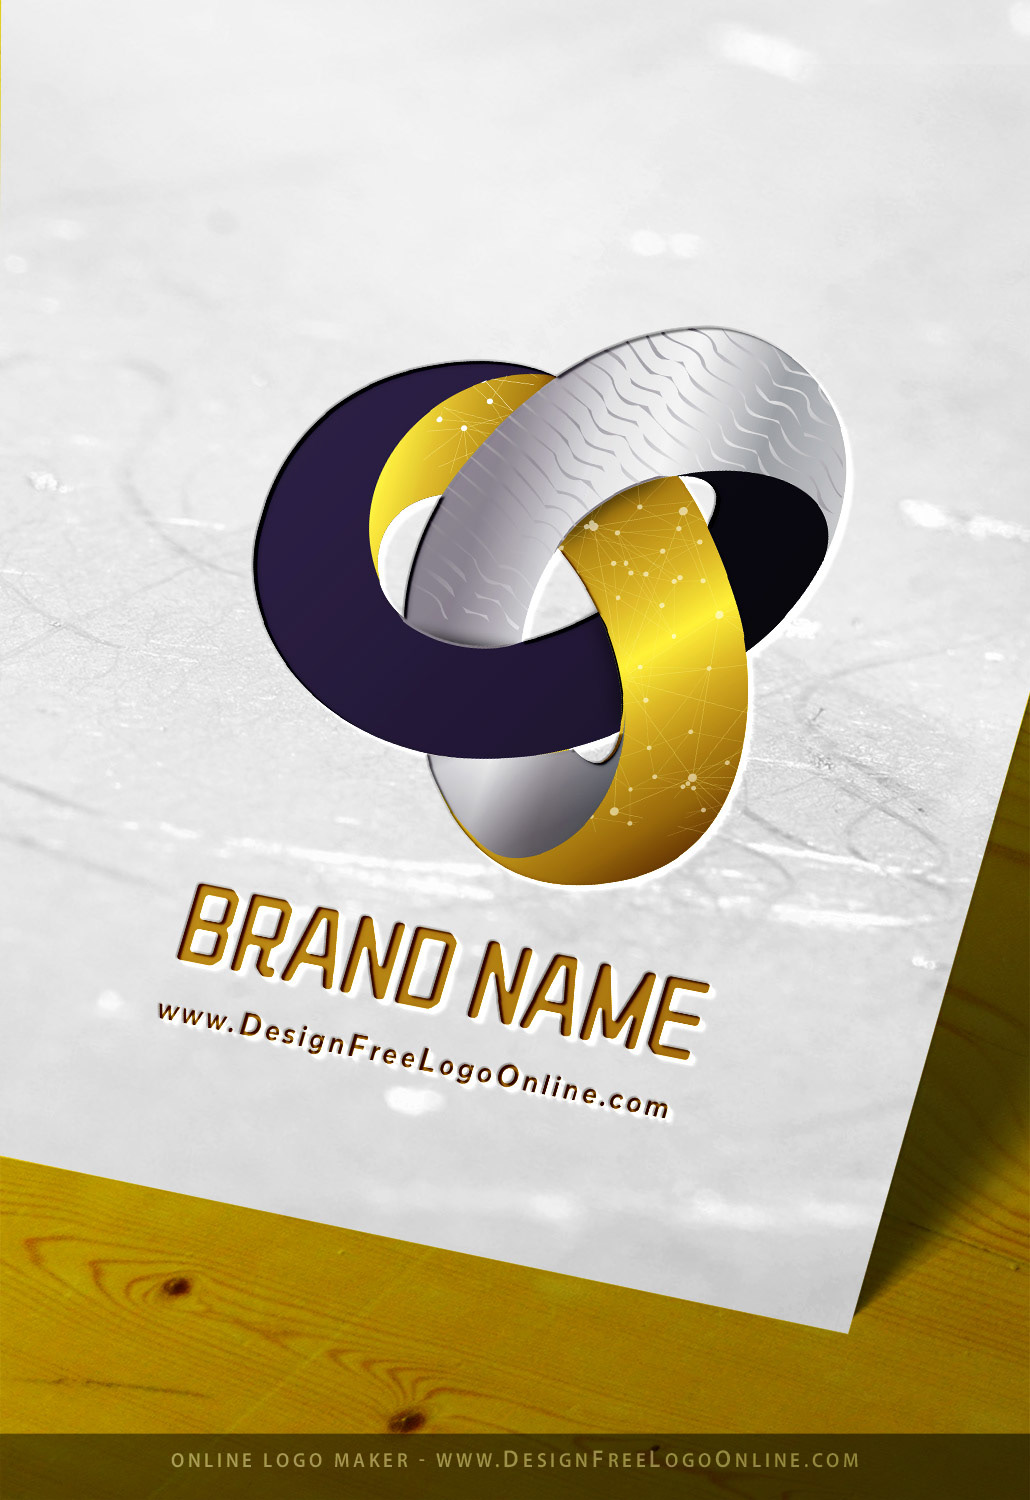 brabding logo Logo Design logos Logotipo Logotype